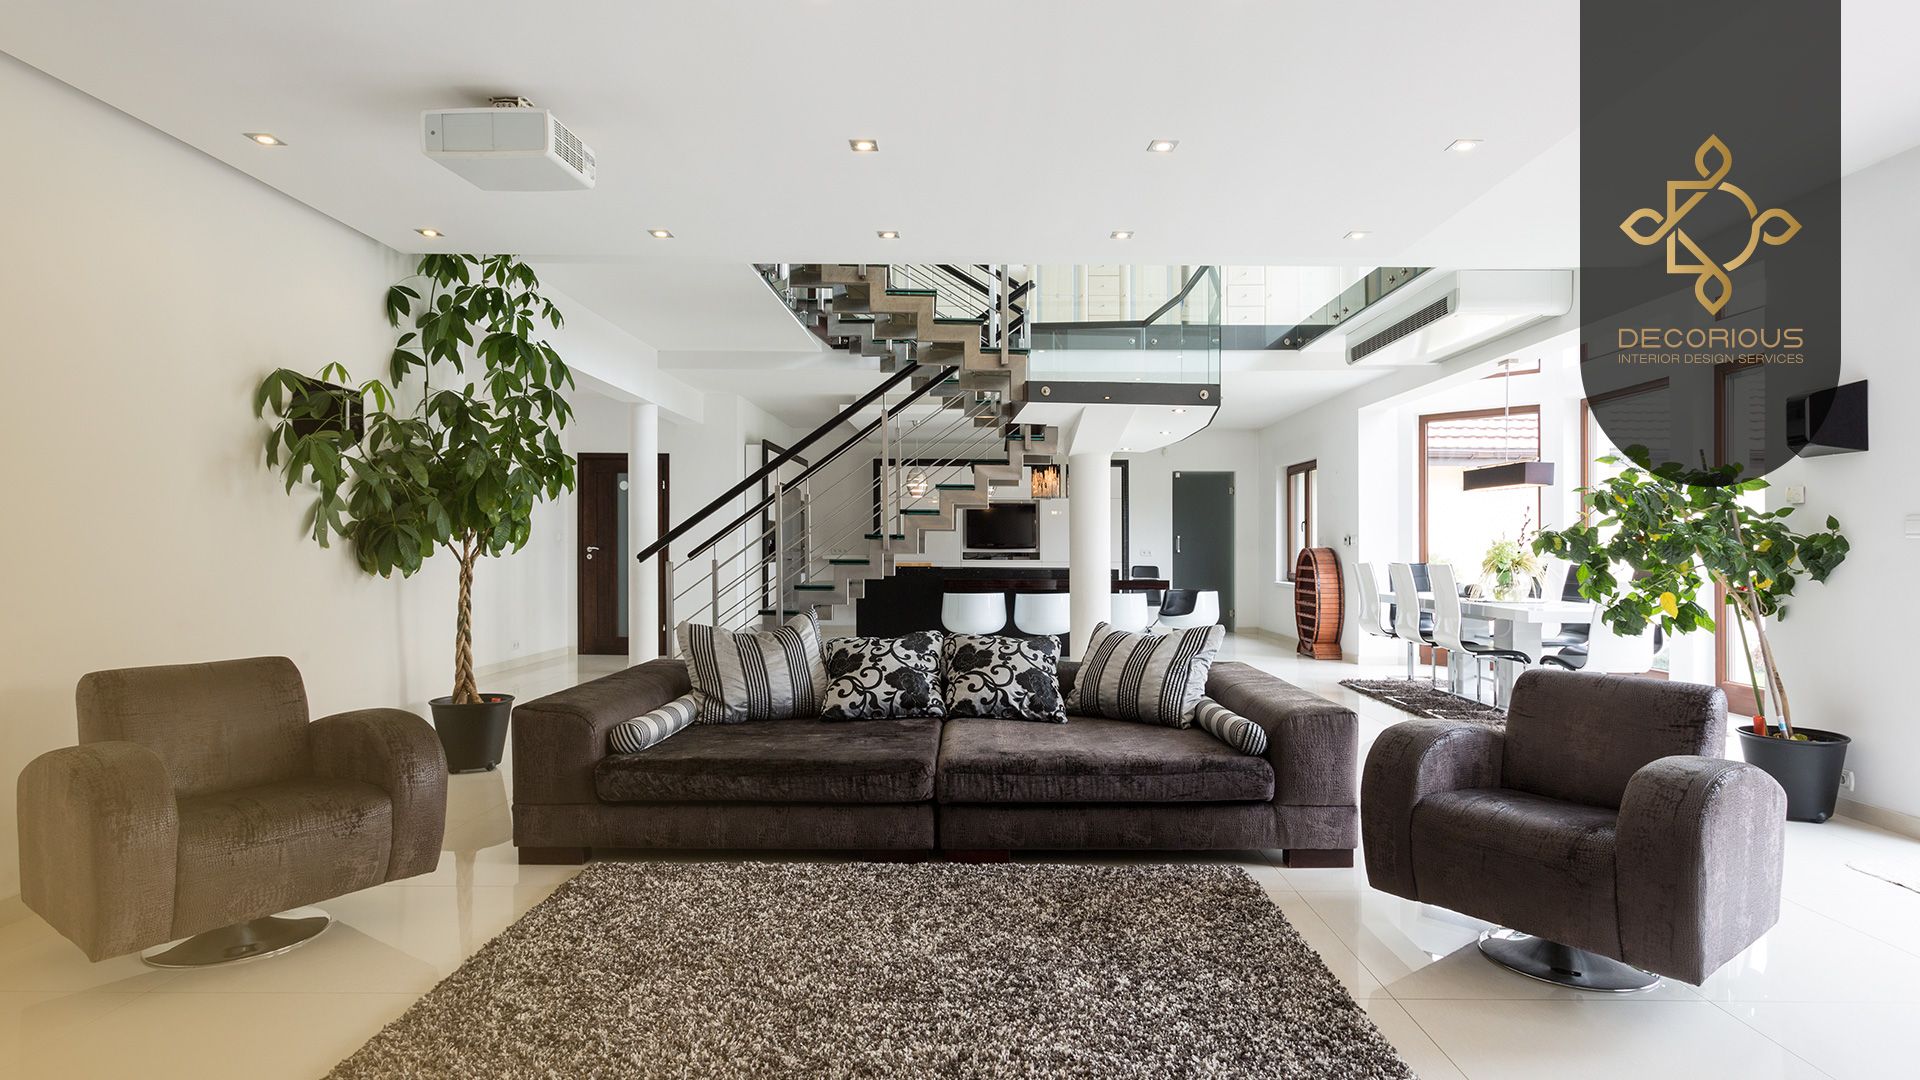 How do you approach a modern interior design for a villa?